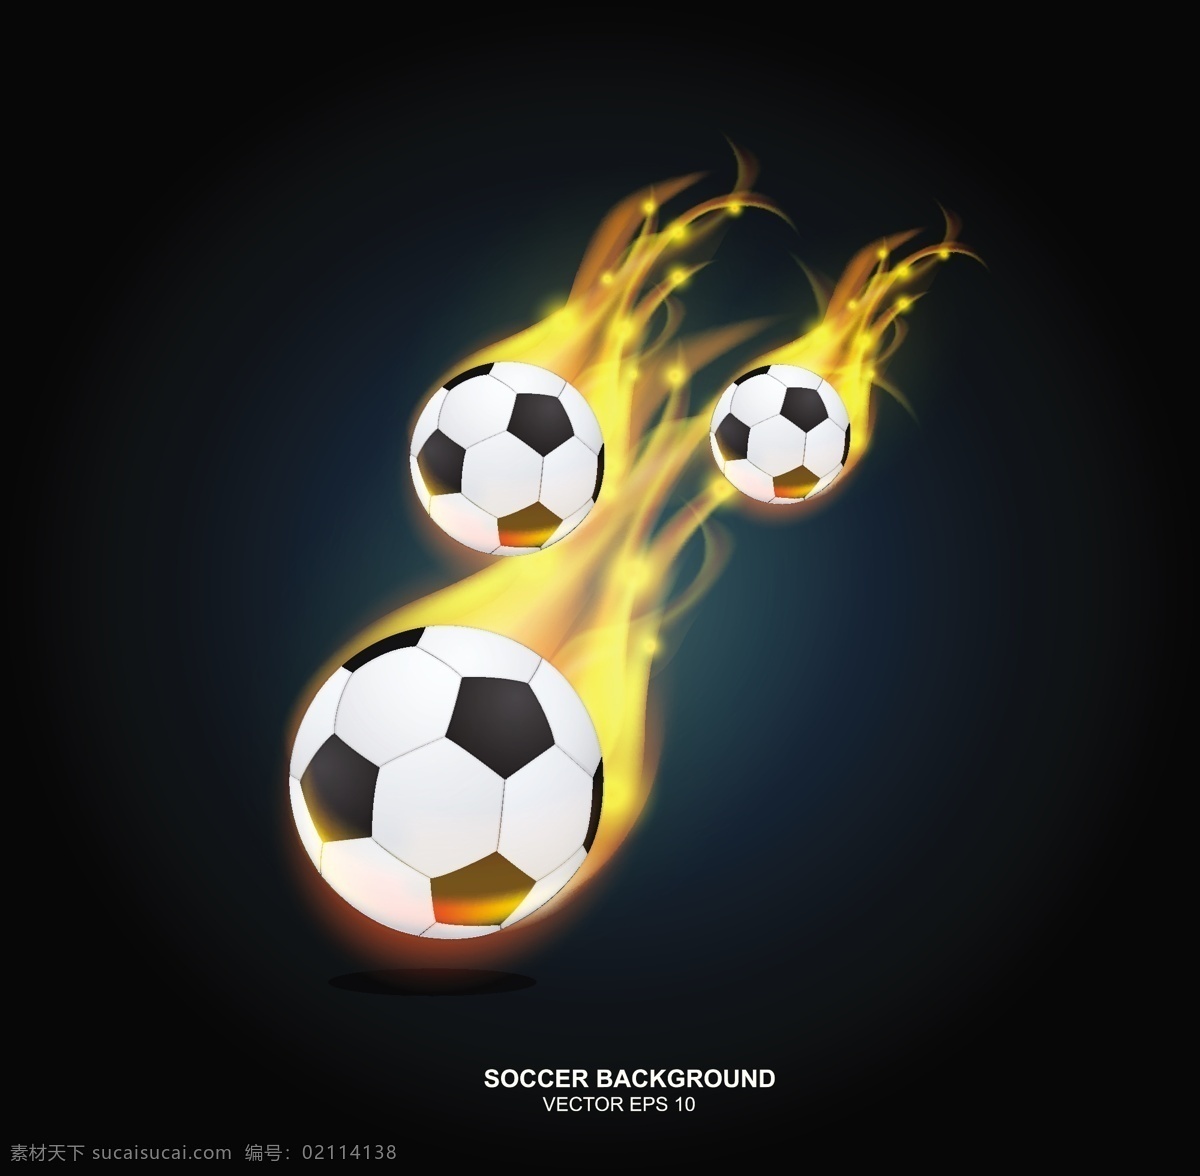 火焰足球背景 火焰 火苗 背景 足球 世界杯 体育运动 生活百科 矢量素材 黑色